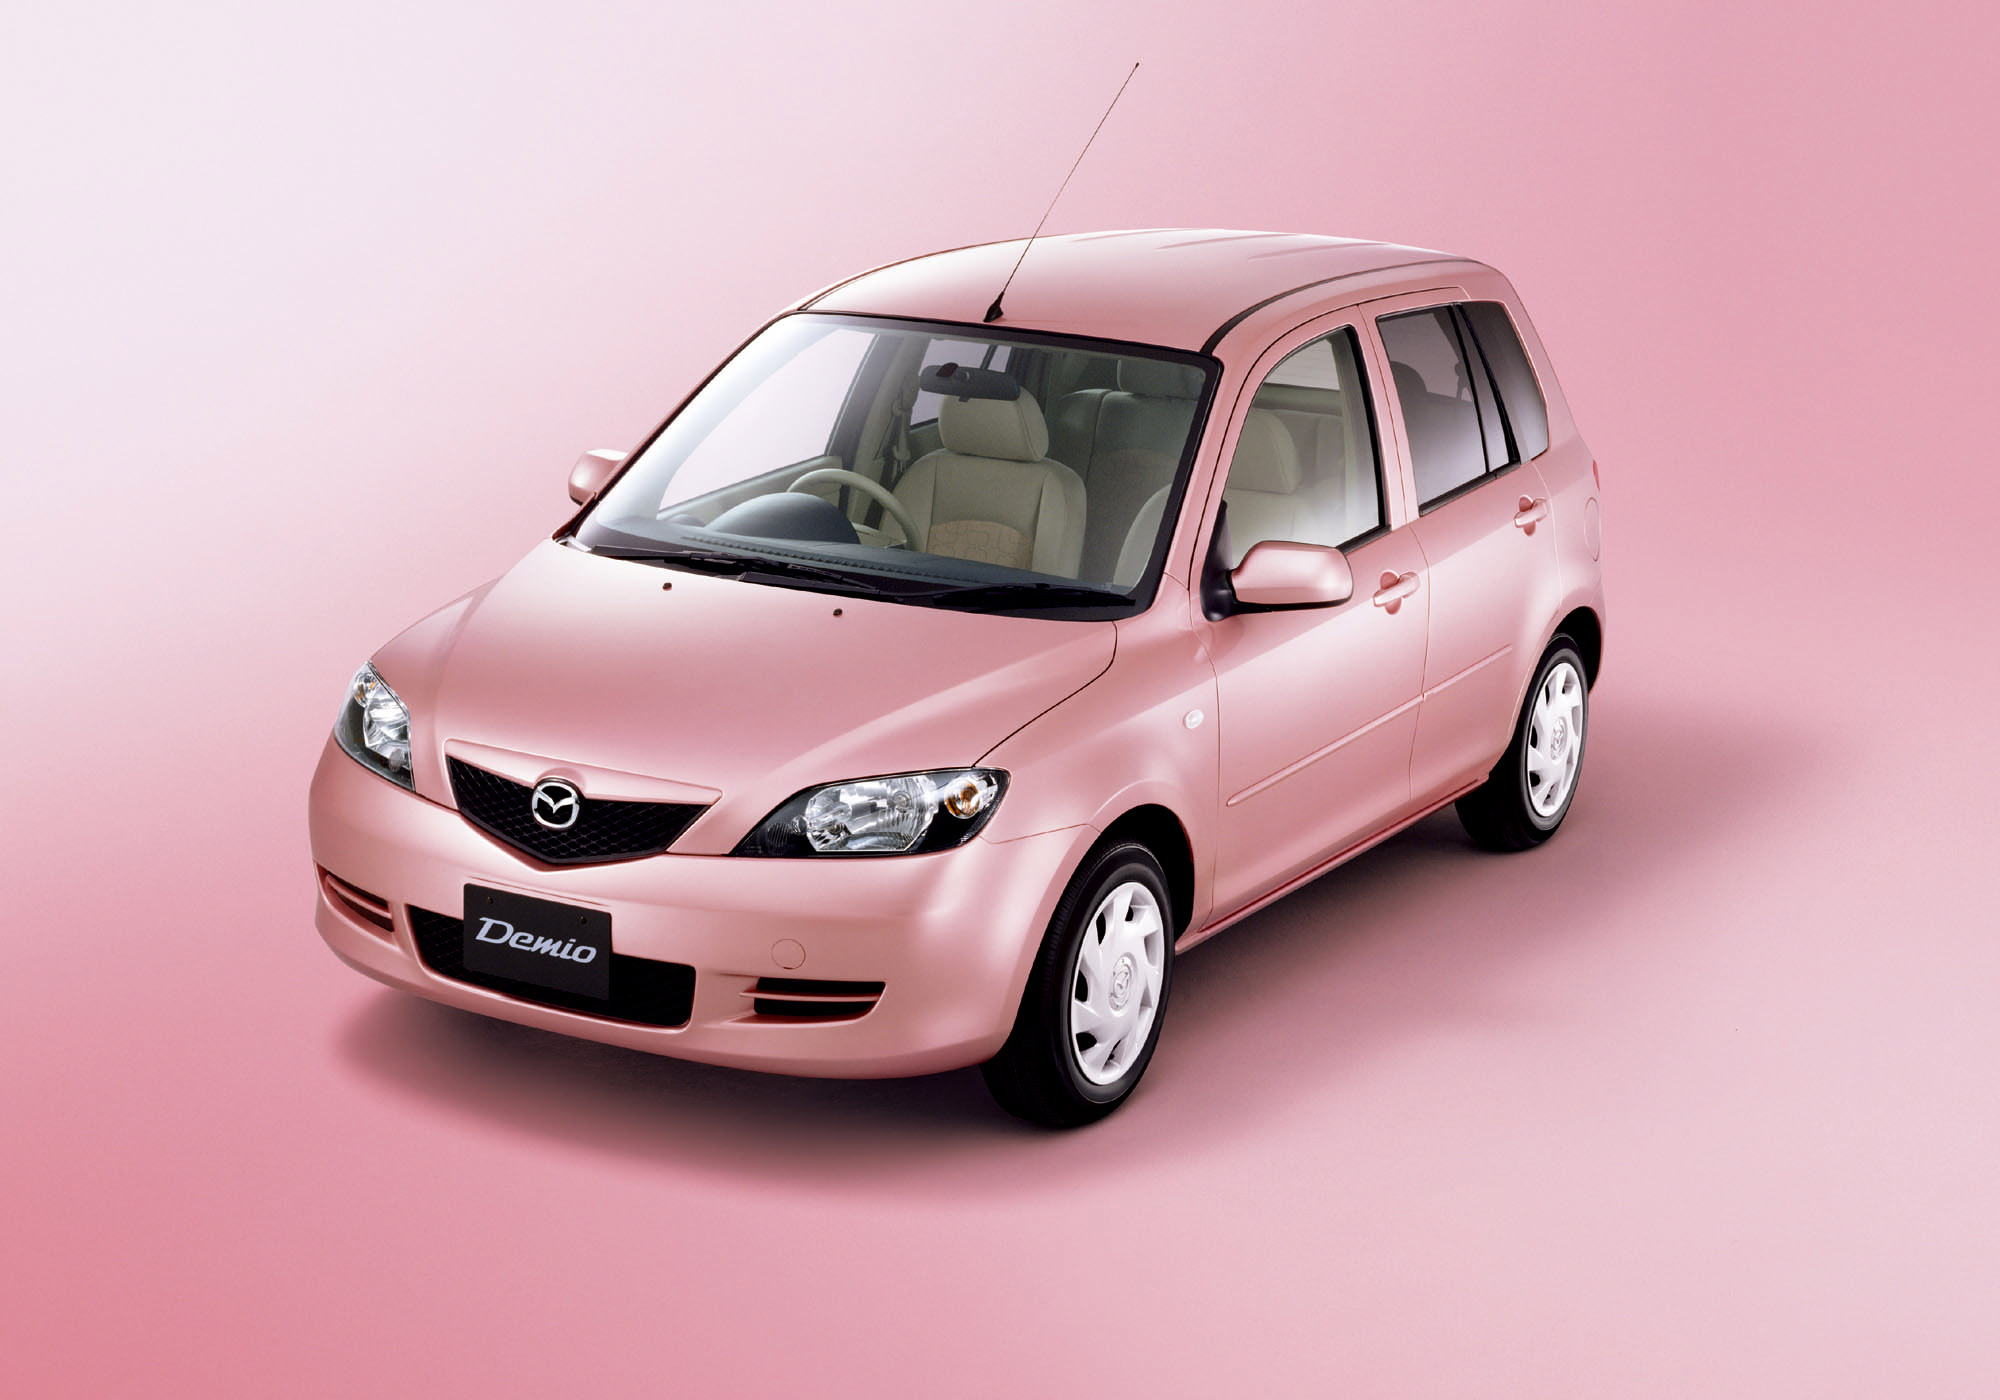 Mazda Demio Stardust Pink Limited Edition photo #1